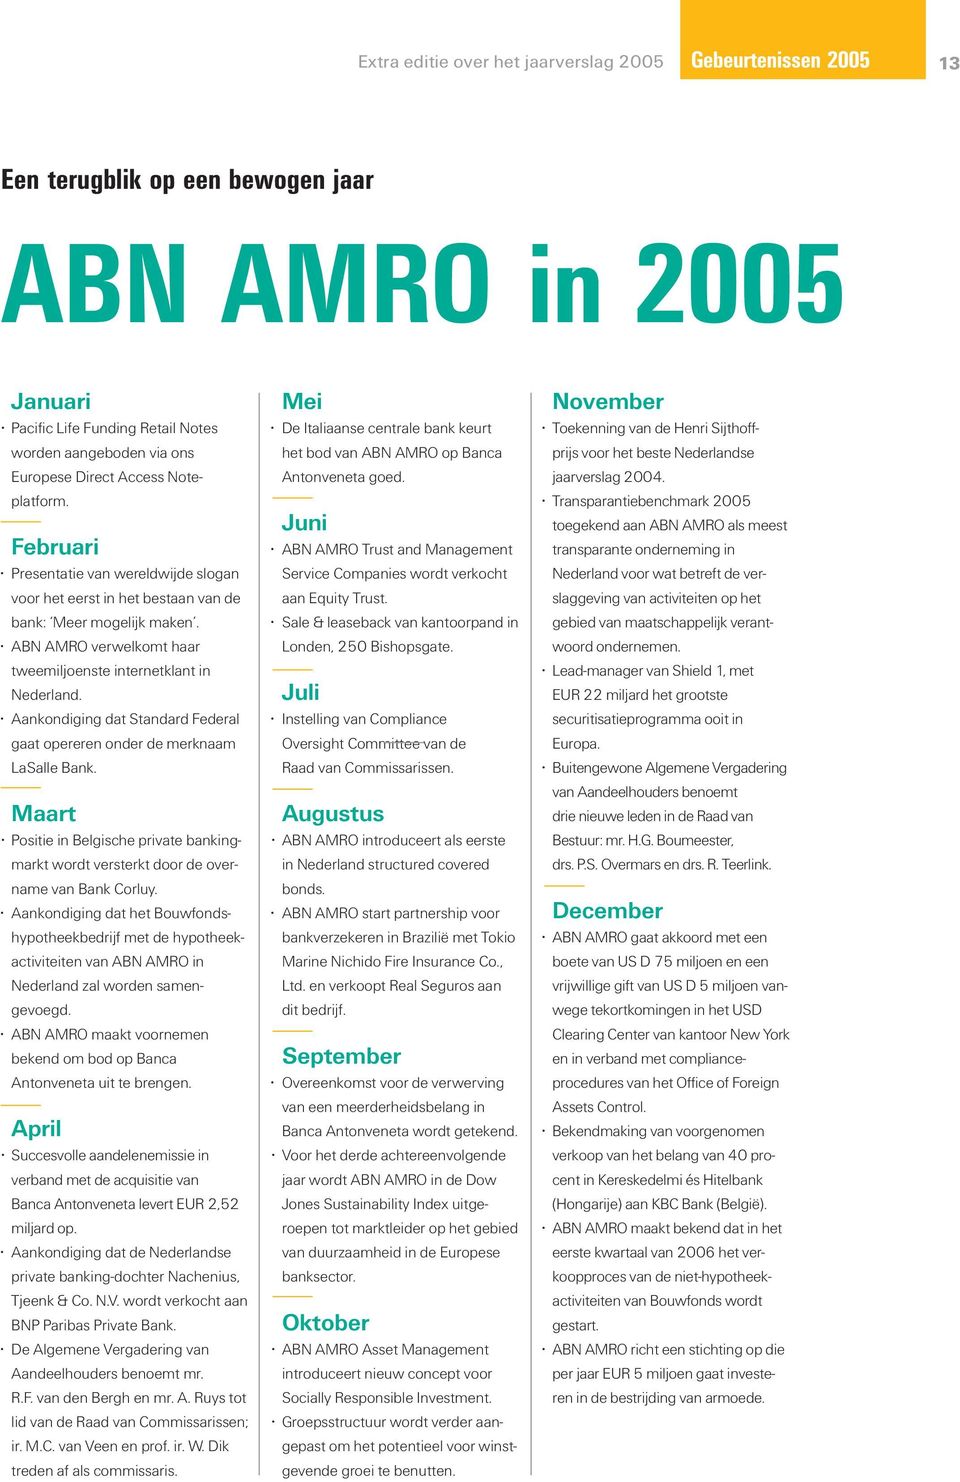 ABN AMRO verwelkomt haar tweemiljoenste internetklant in Nederland. Aankondiging dat Standard Federal gaat opereren onder de merknaam LaSalle Bank.